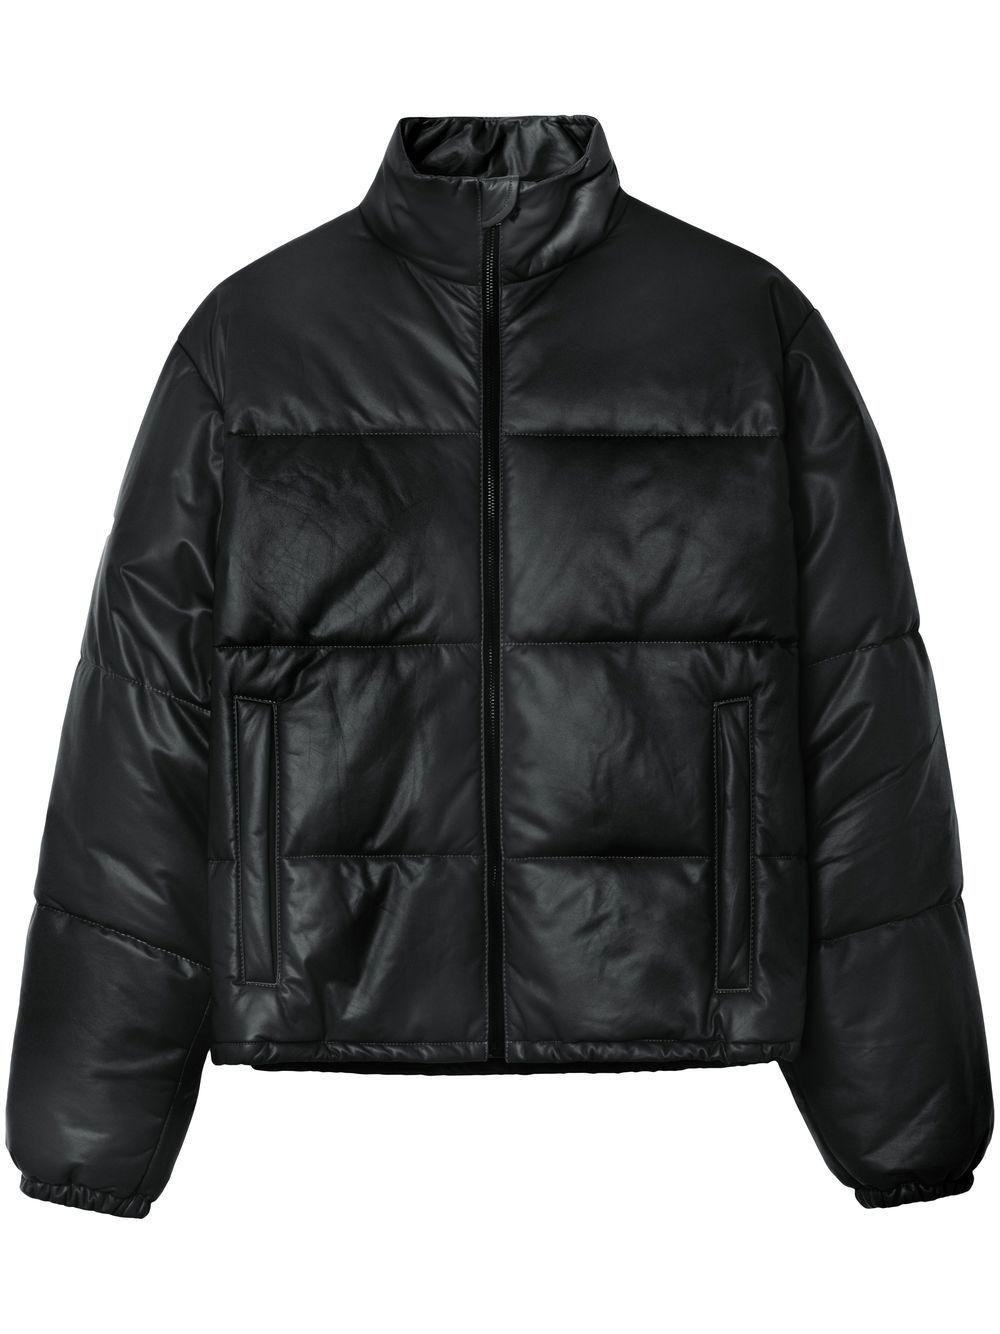 John Elliott Pico Leather Puffer Jacket in Black for Men | Lyst